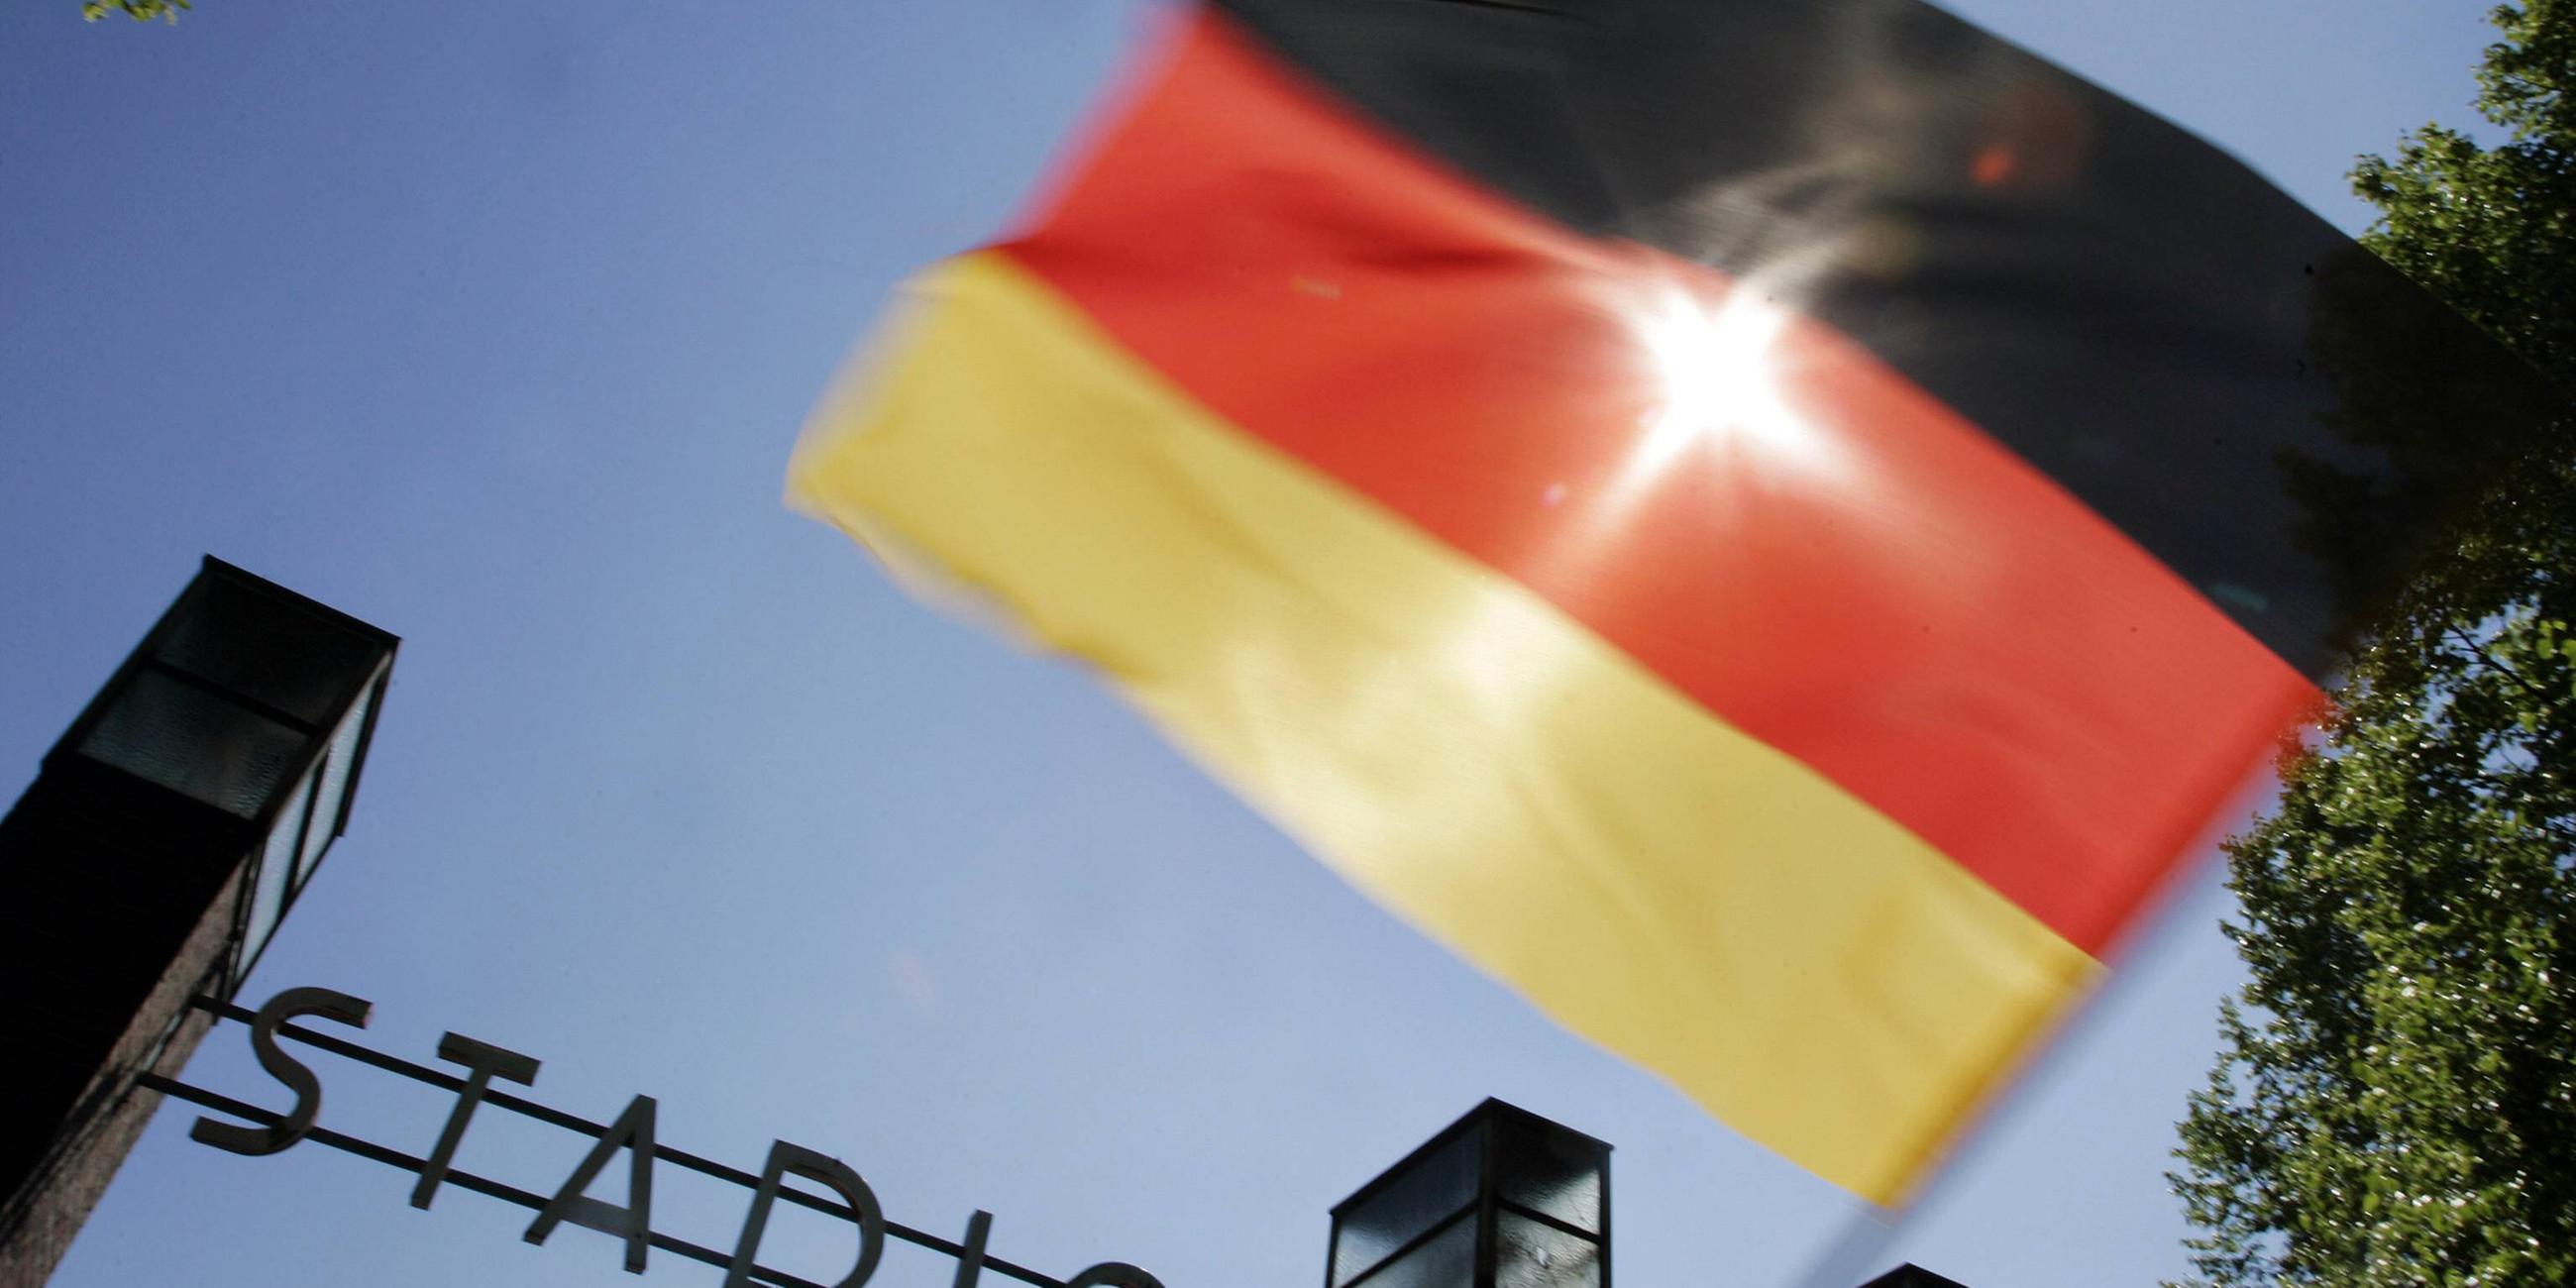 Archiv: Eine Deutschlandflagge im Gegenlicht